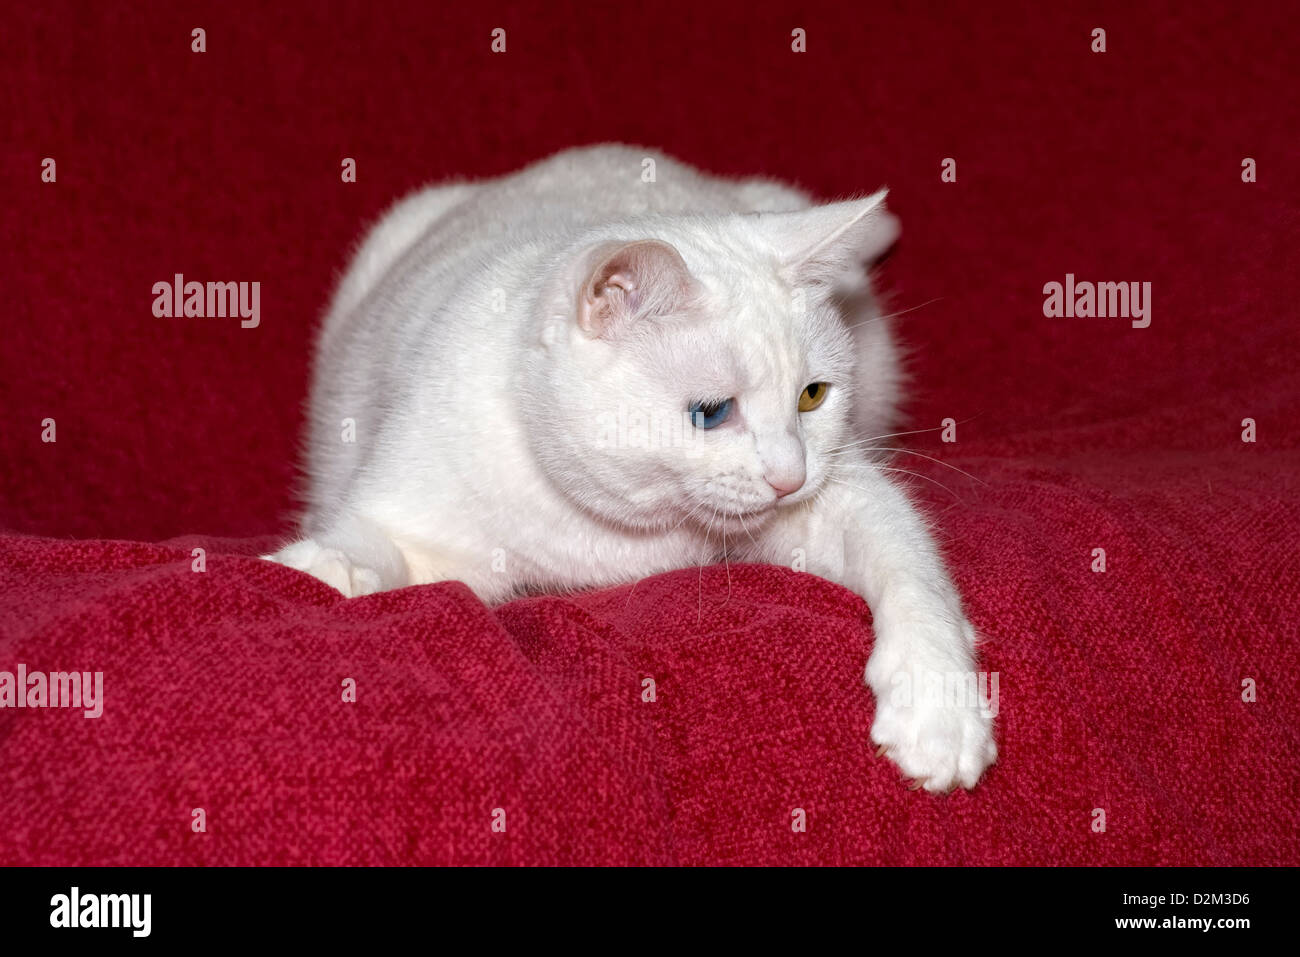 Gatto Bianco con differenti occhi colorati prese nei confronti di un colore rossastro sfondo rosa con zampa sospeso verso il basso Foto Stock